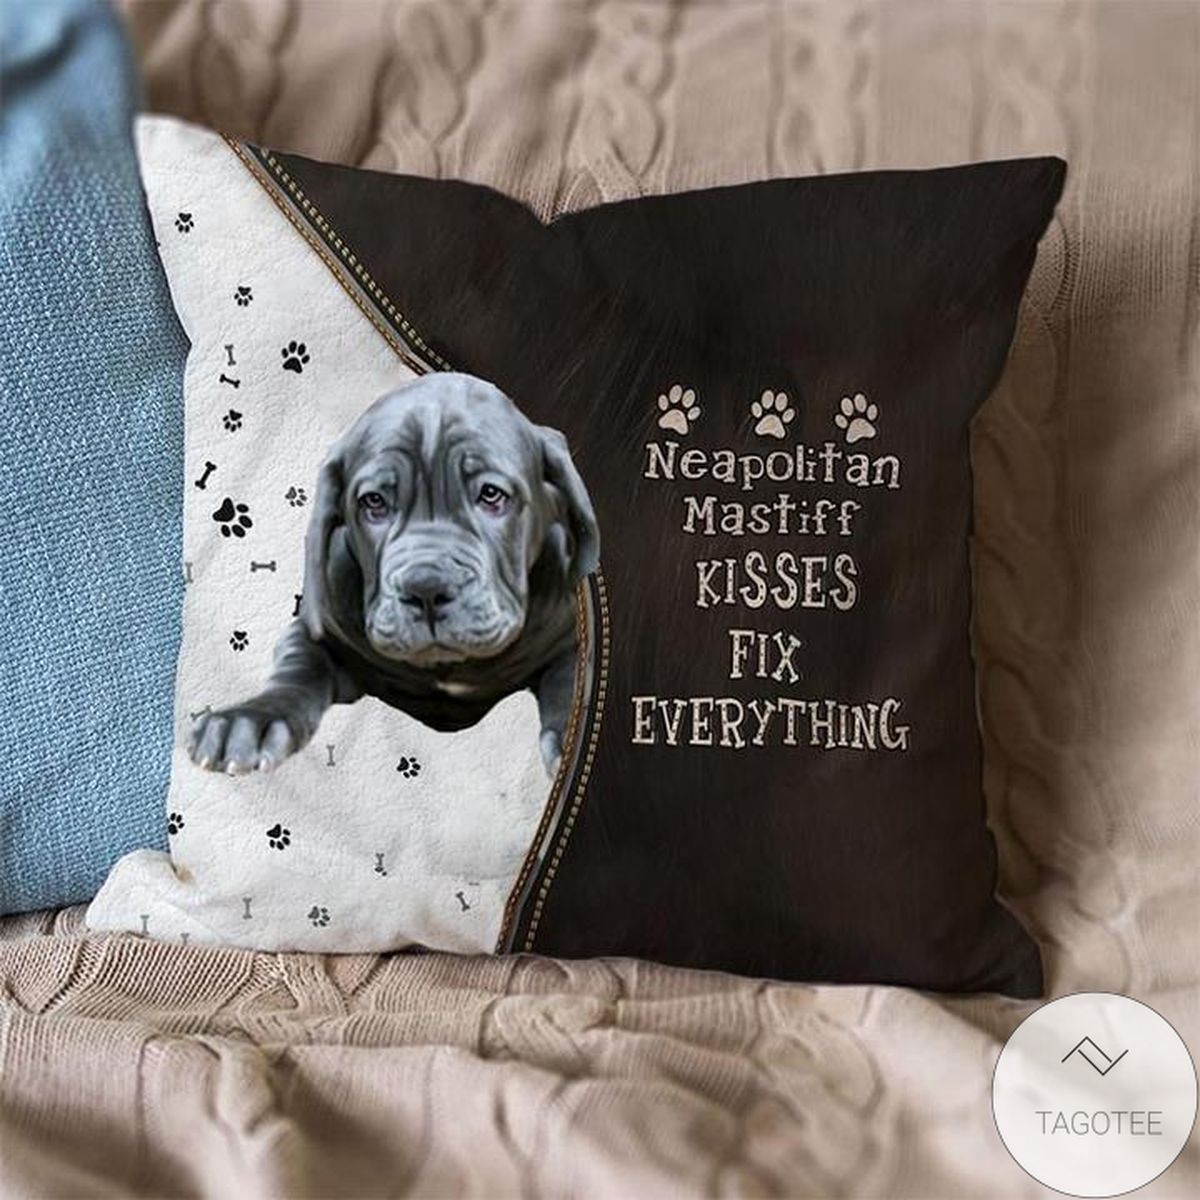 Neapolitan-Mastiff Kisses Fix Everything Pillowcase